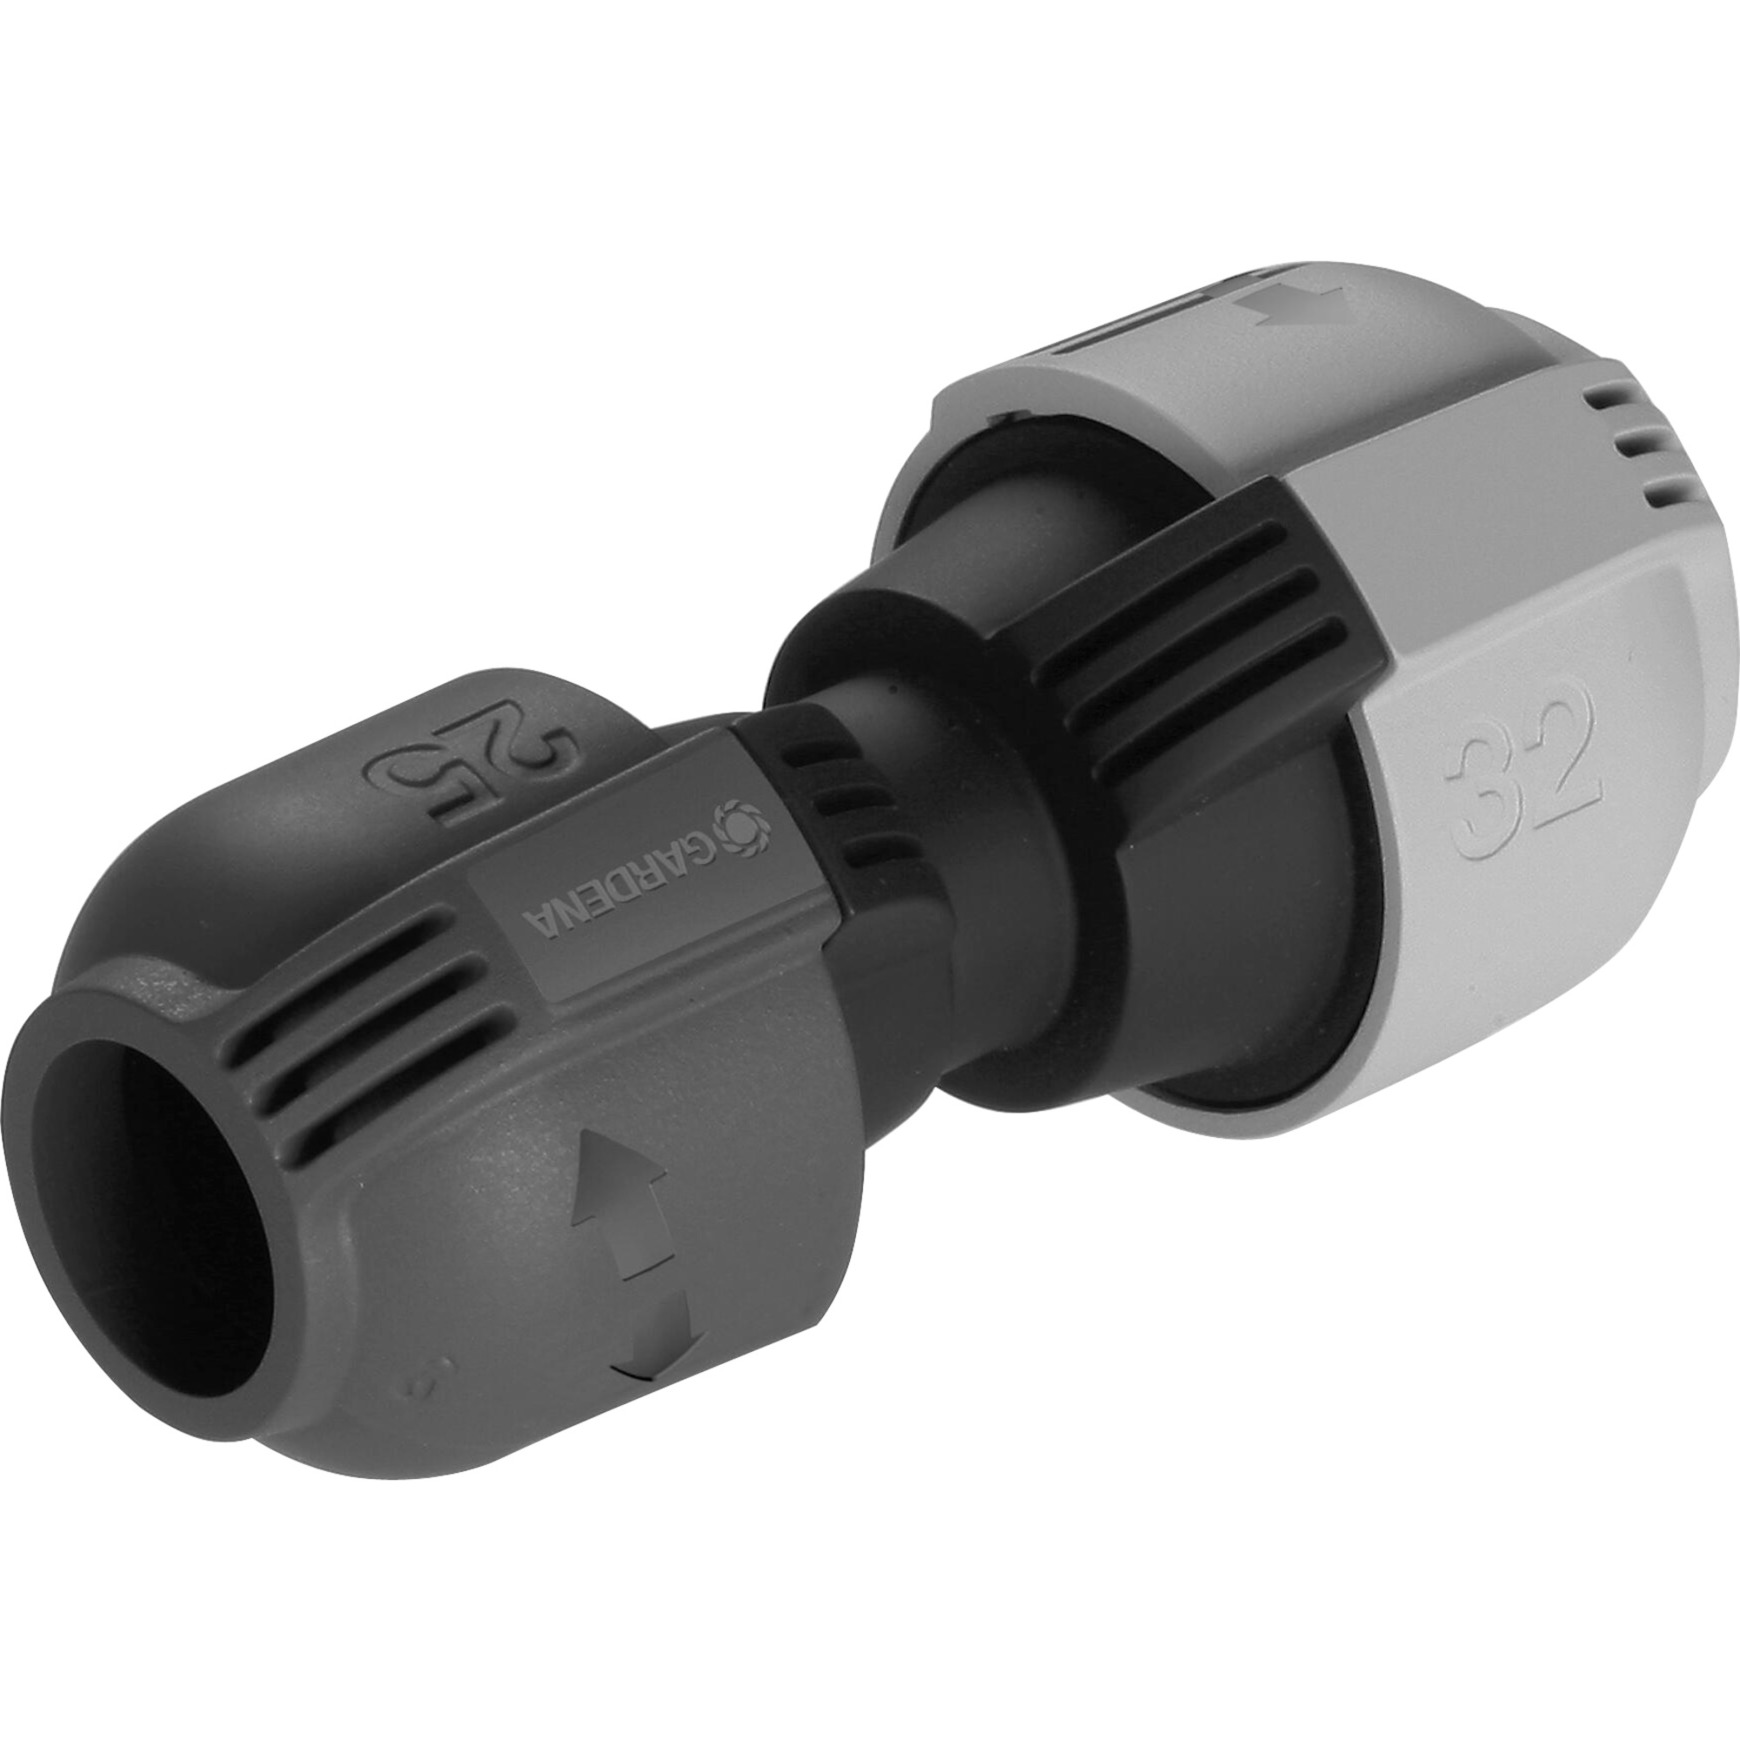 Sprinklersystem Verbinder-Stück mit Reduzierung 32mm > 25mm, Verbindung von Gardena